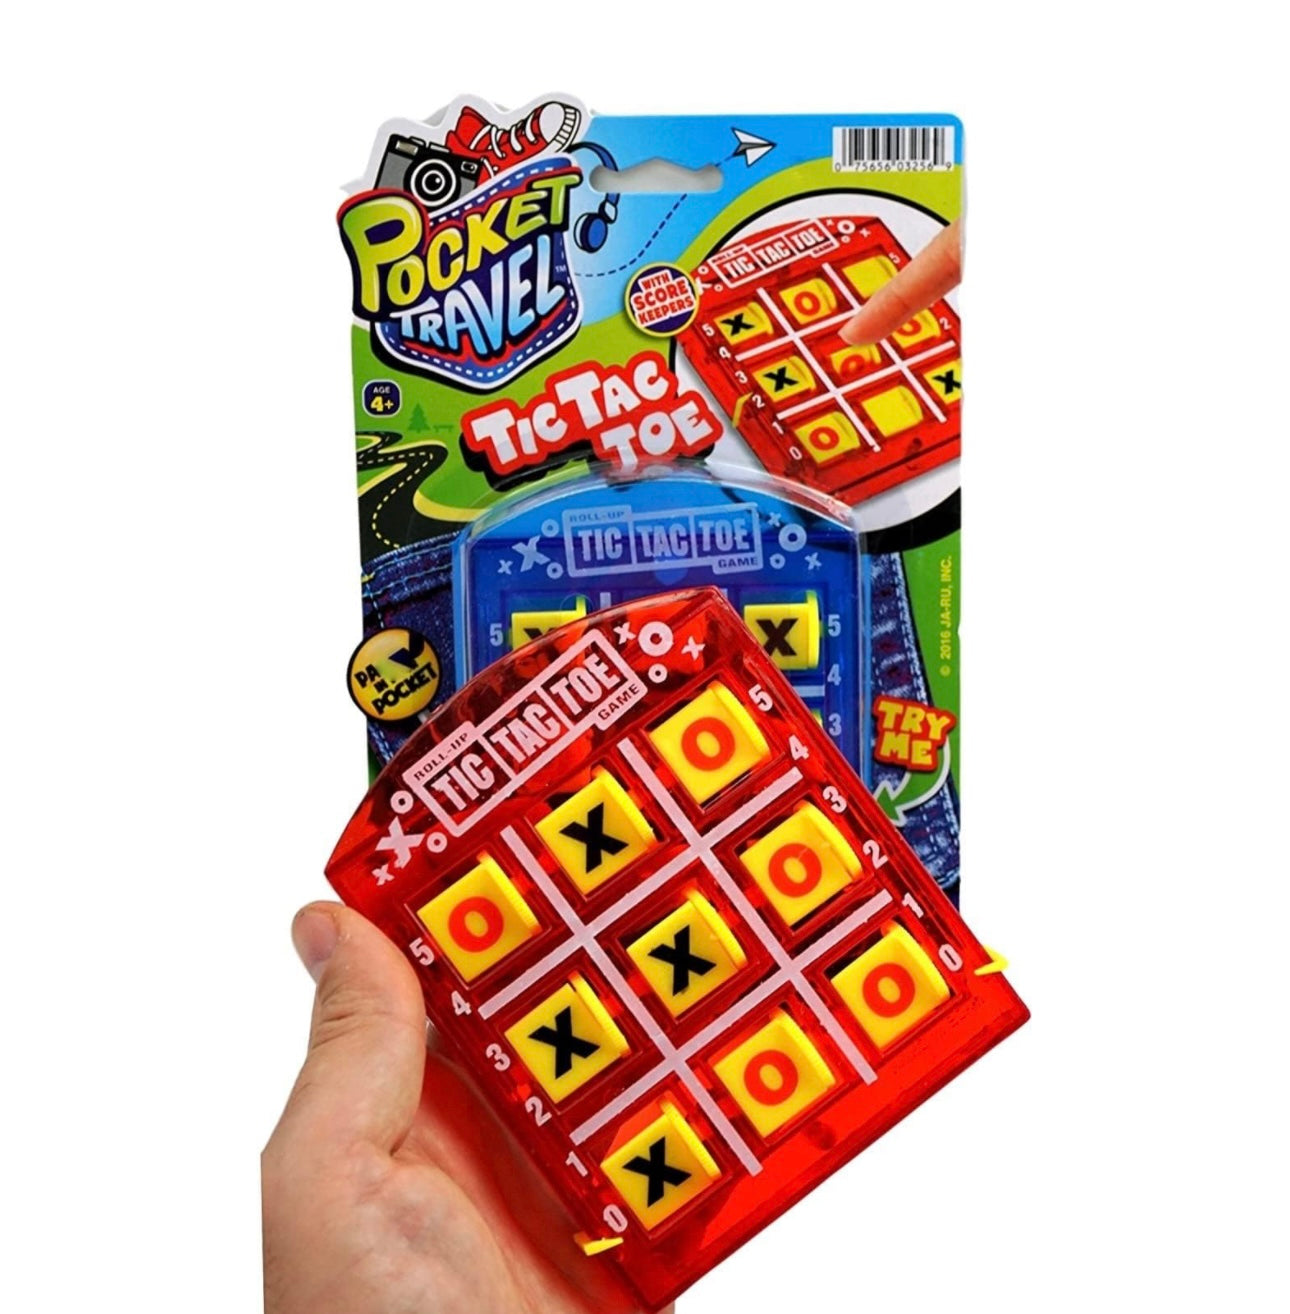 Pocket Travel Games